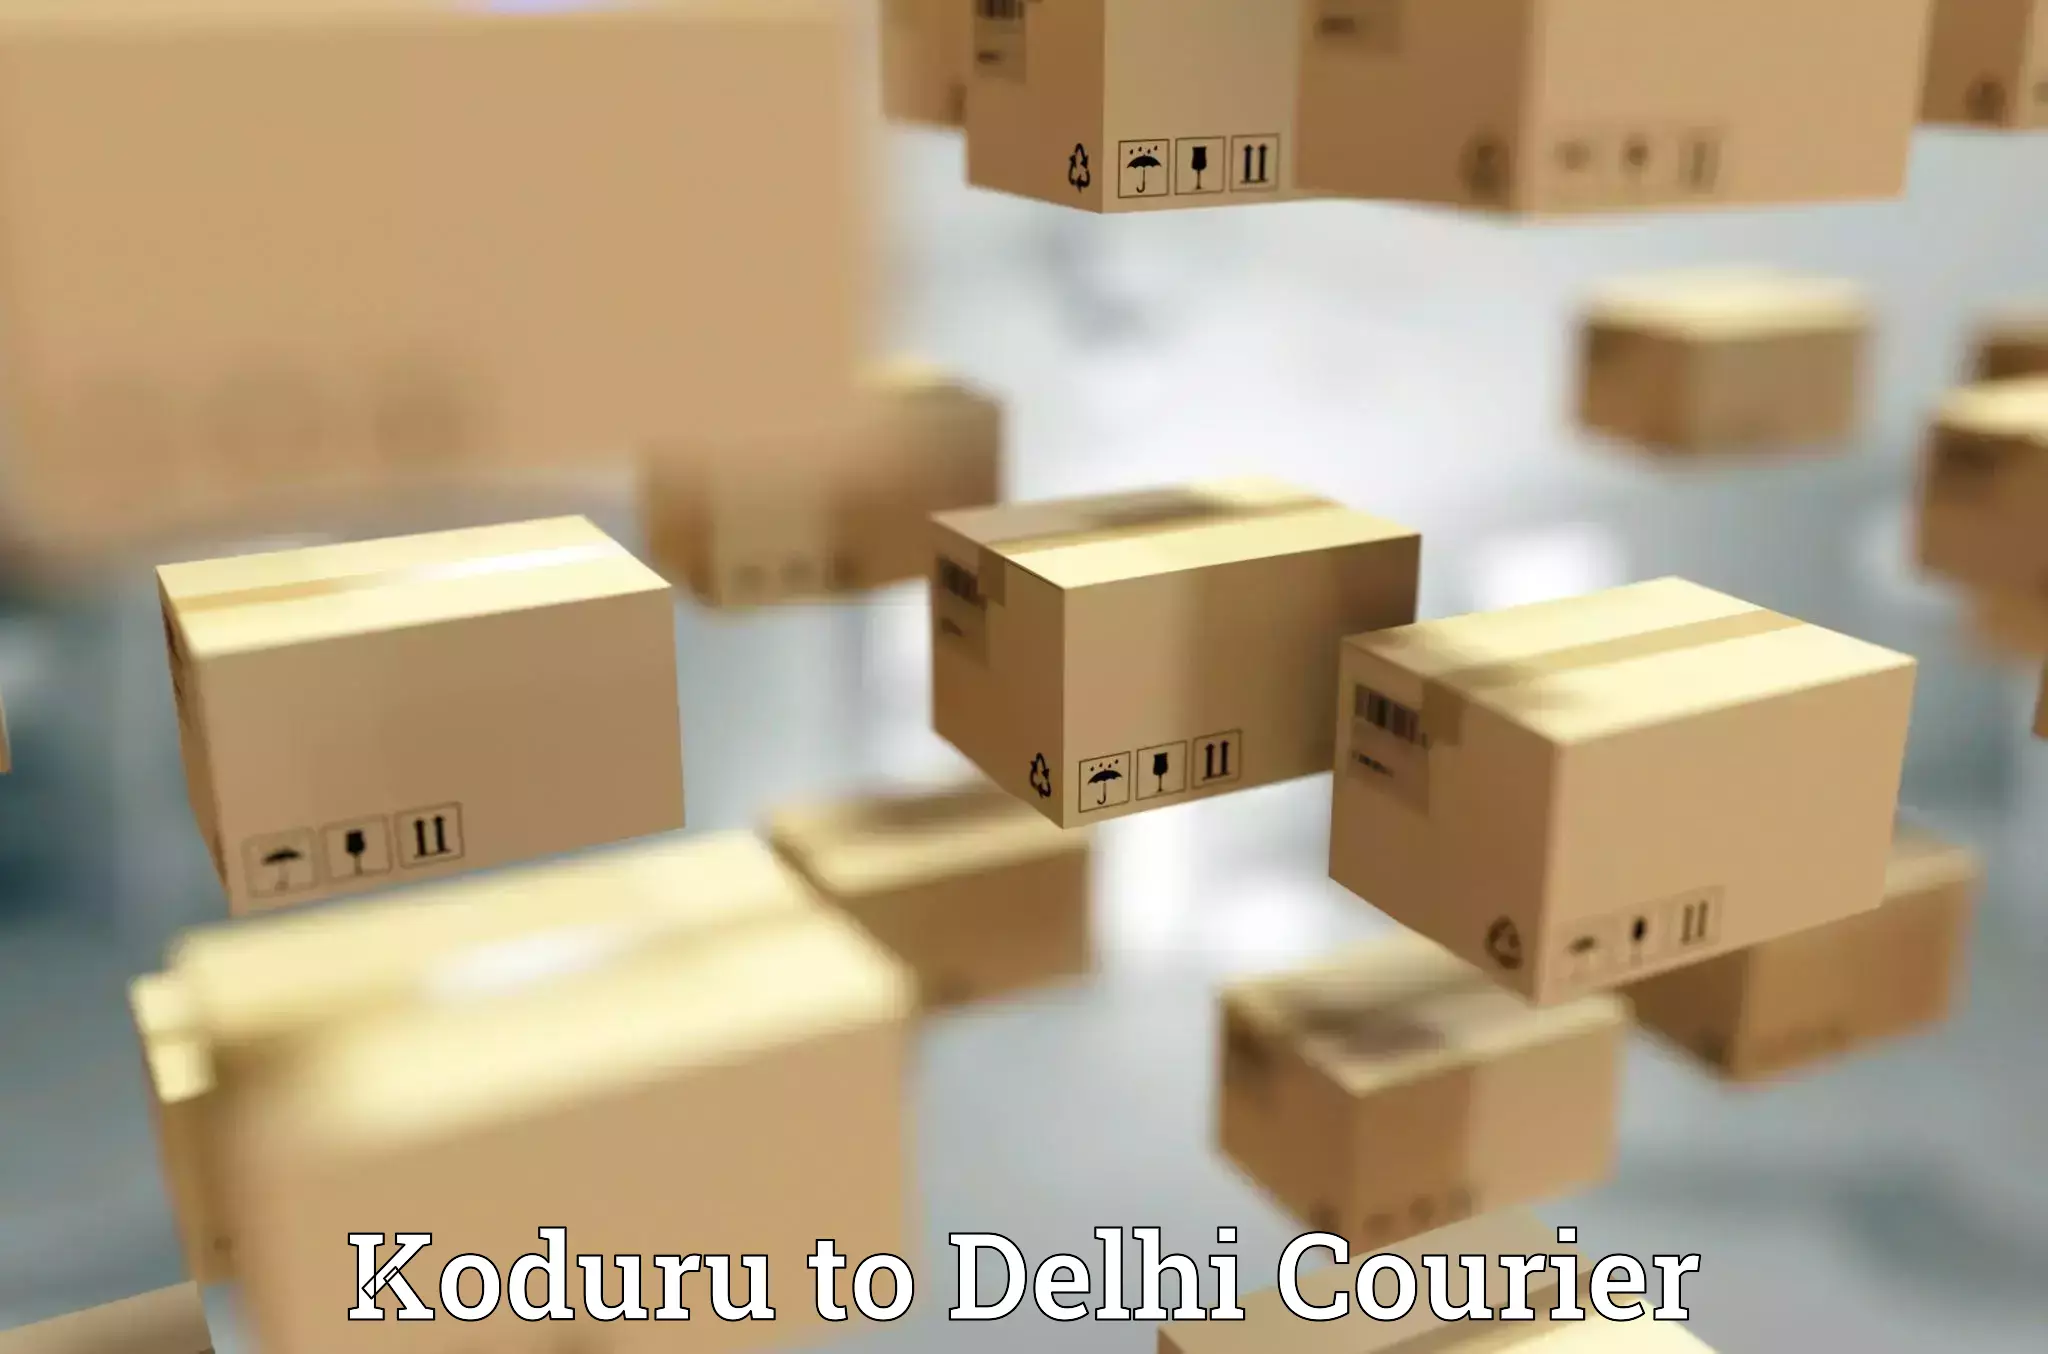 Small parcel delivery Koduru to Kalkaji